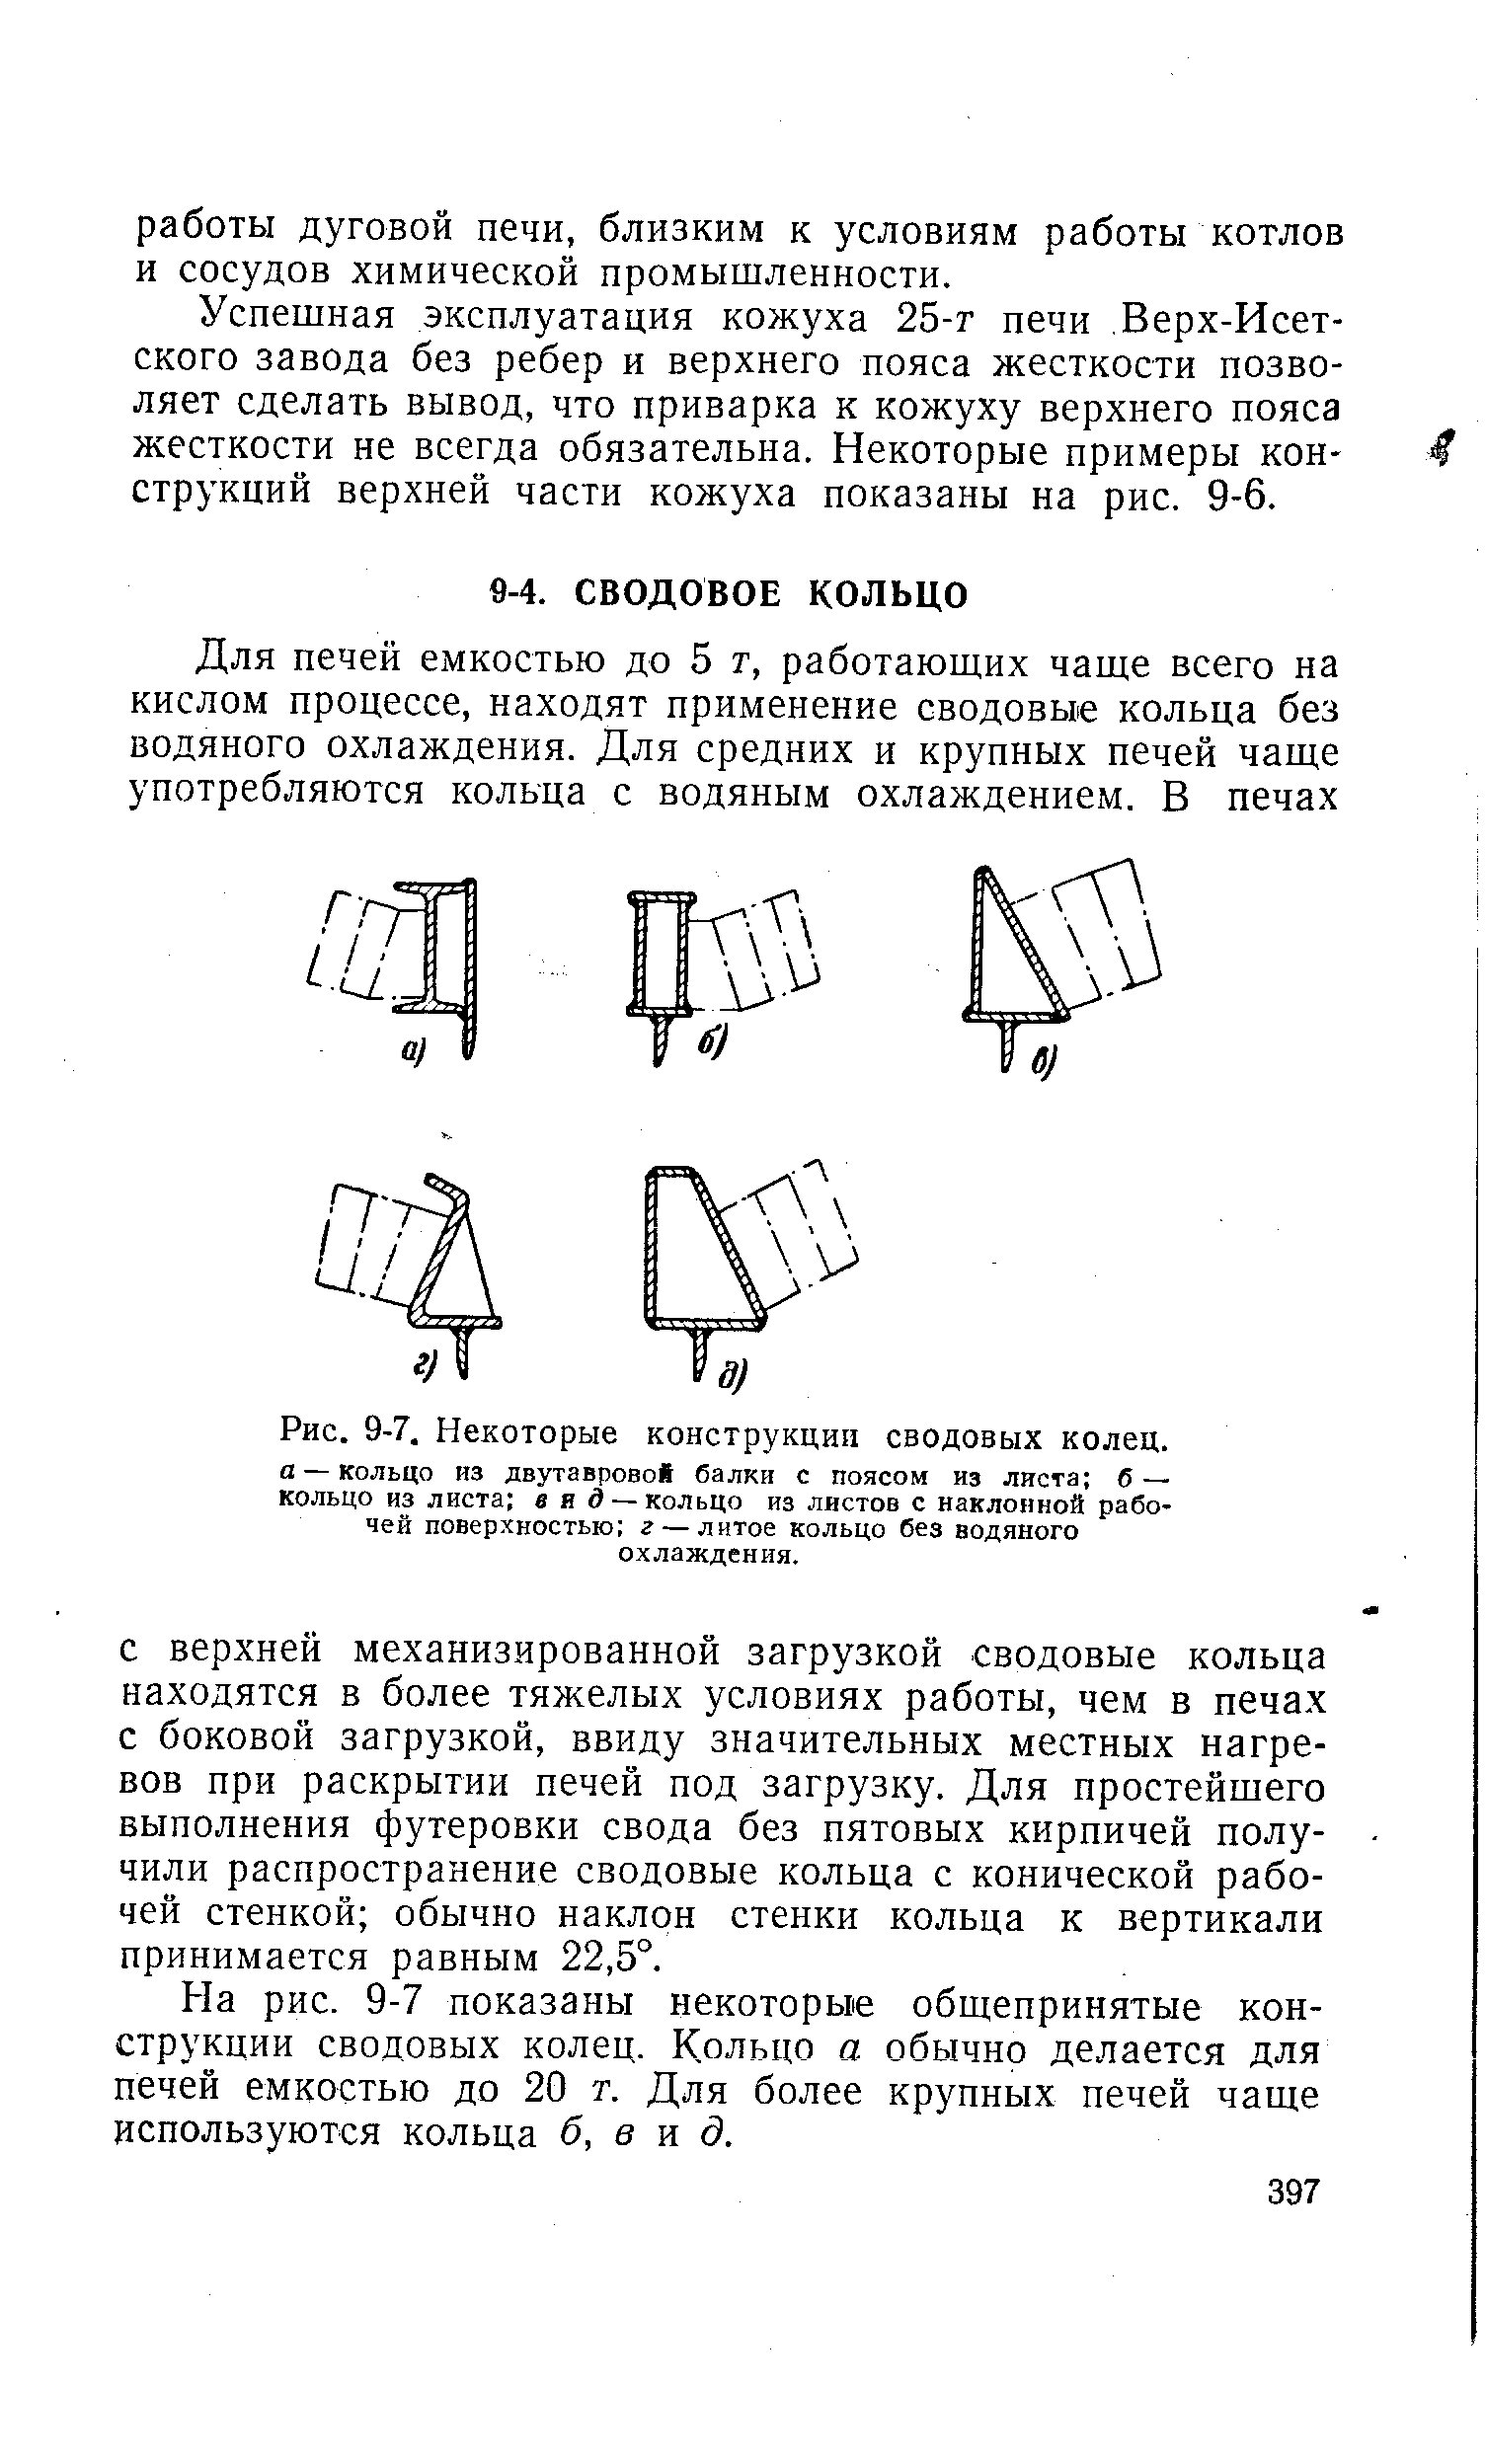 На рис. 9-7 показаны некоторые общепринятые конструкции сводовых колец. Кольцо а обычно делается для печей емкостью до 20 т. Для более крупных печей чаще используются кольца б, в и д.